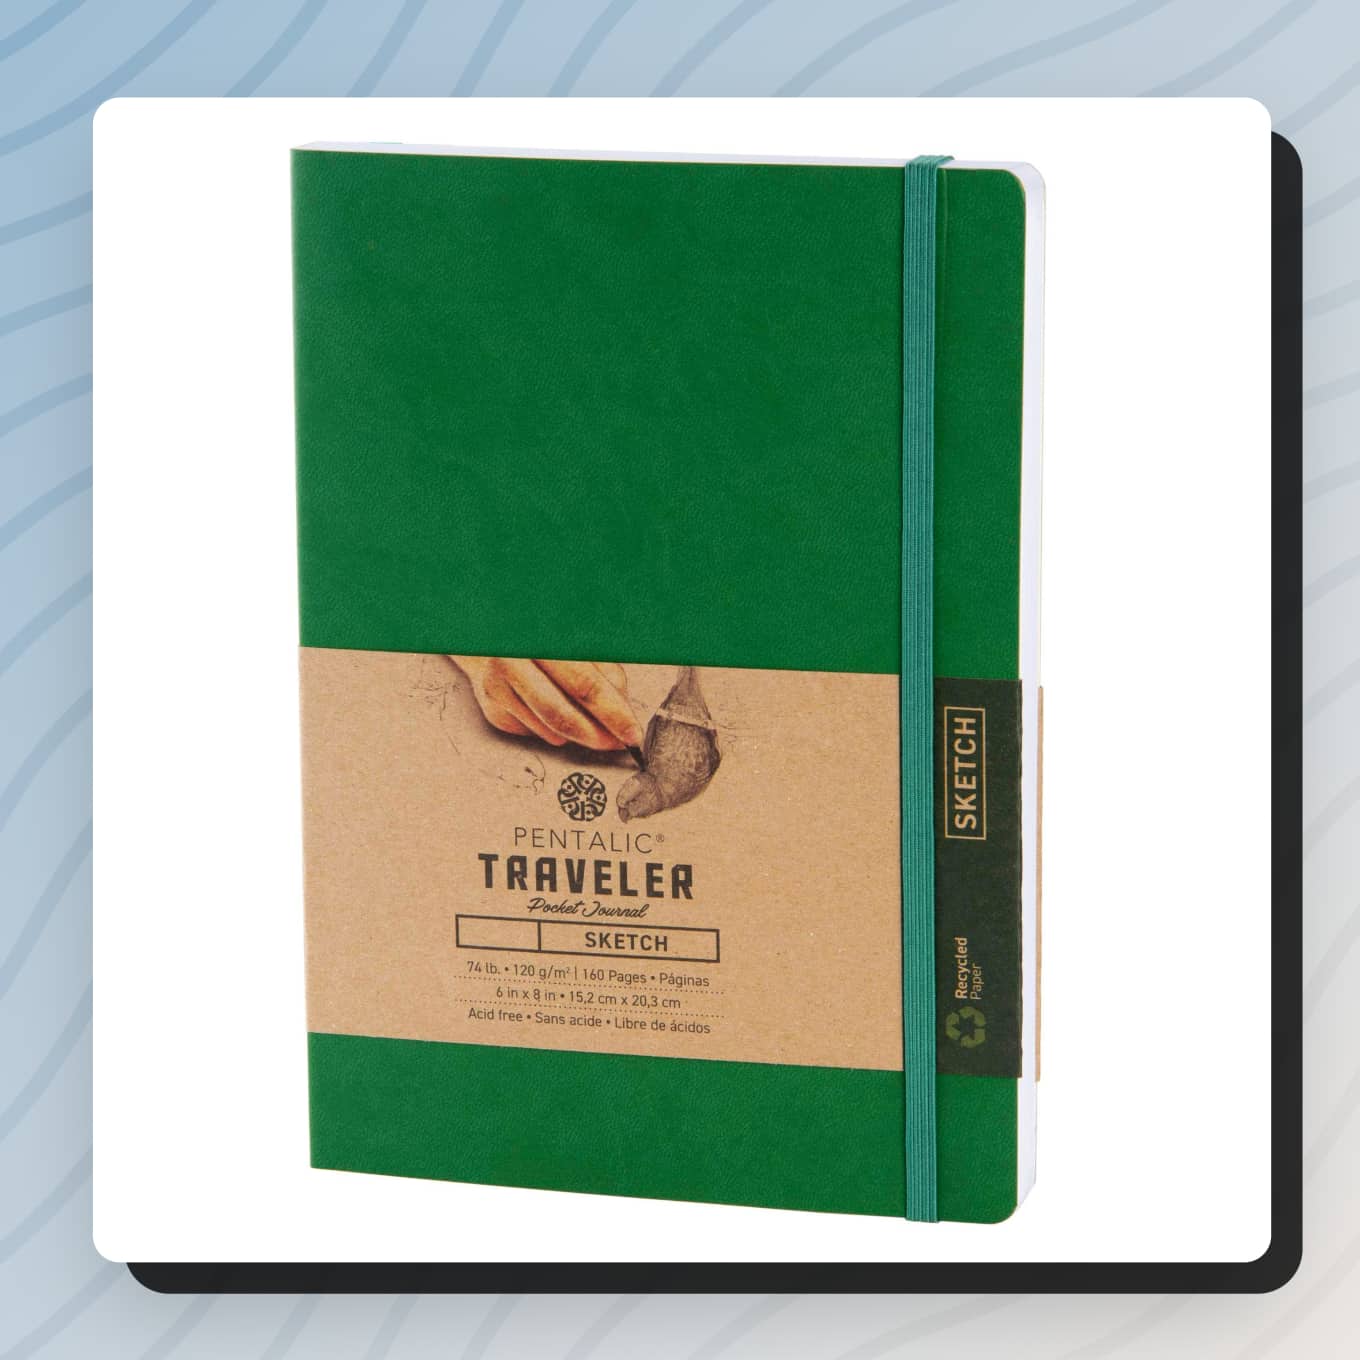 Groen notitieboekje met gerecycled papier